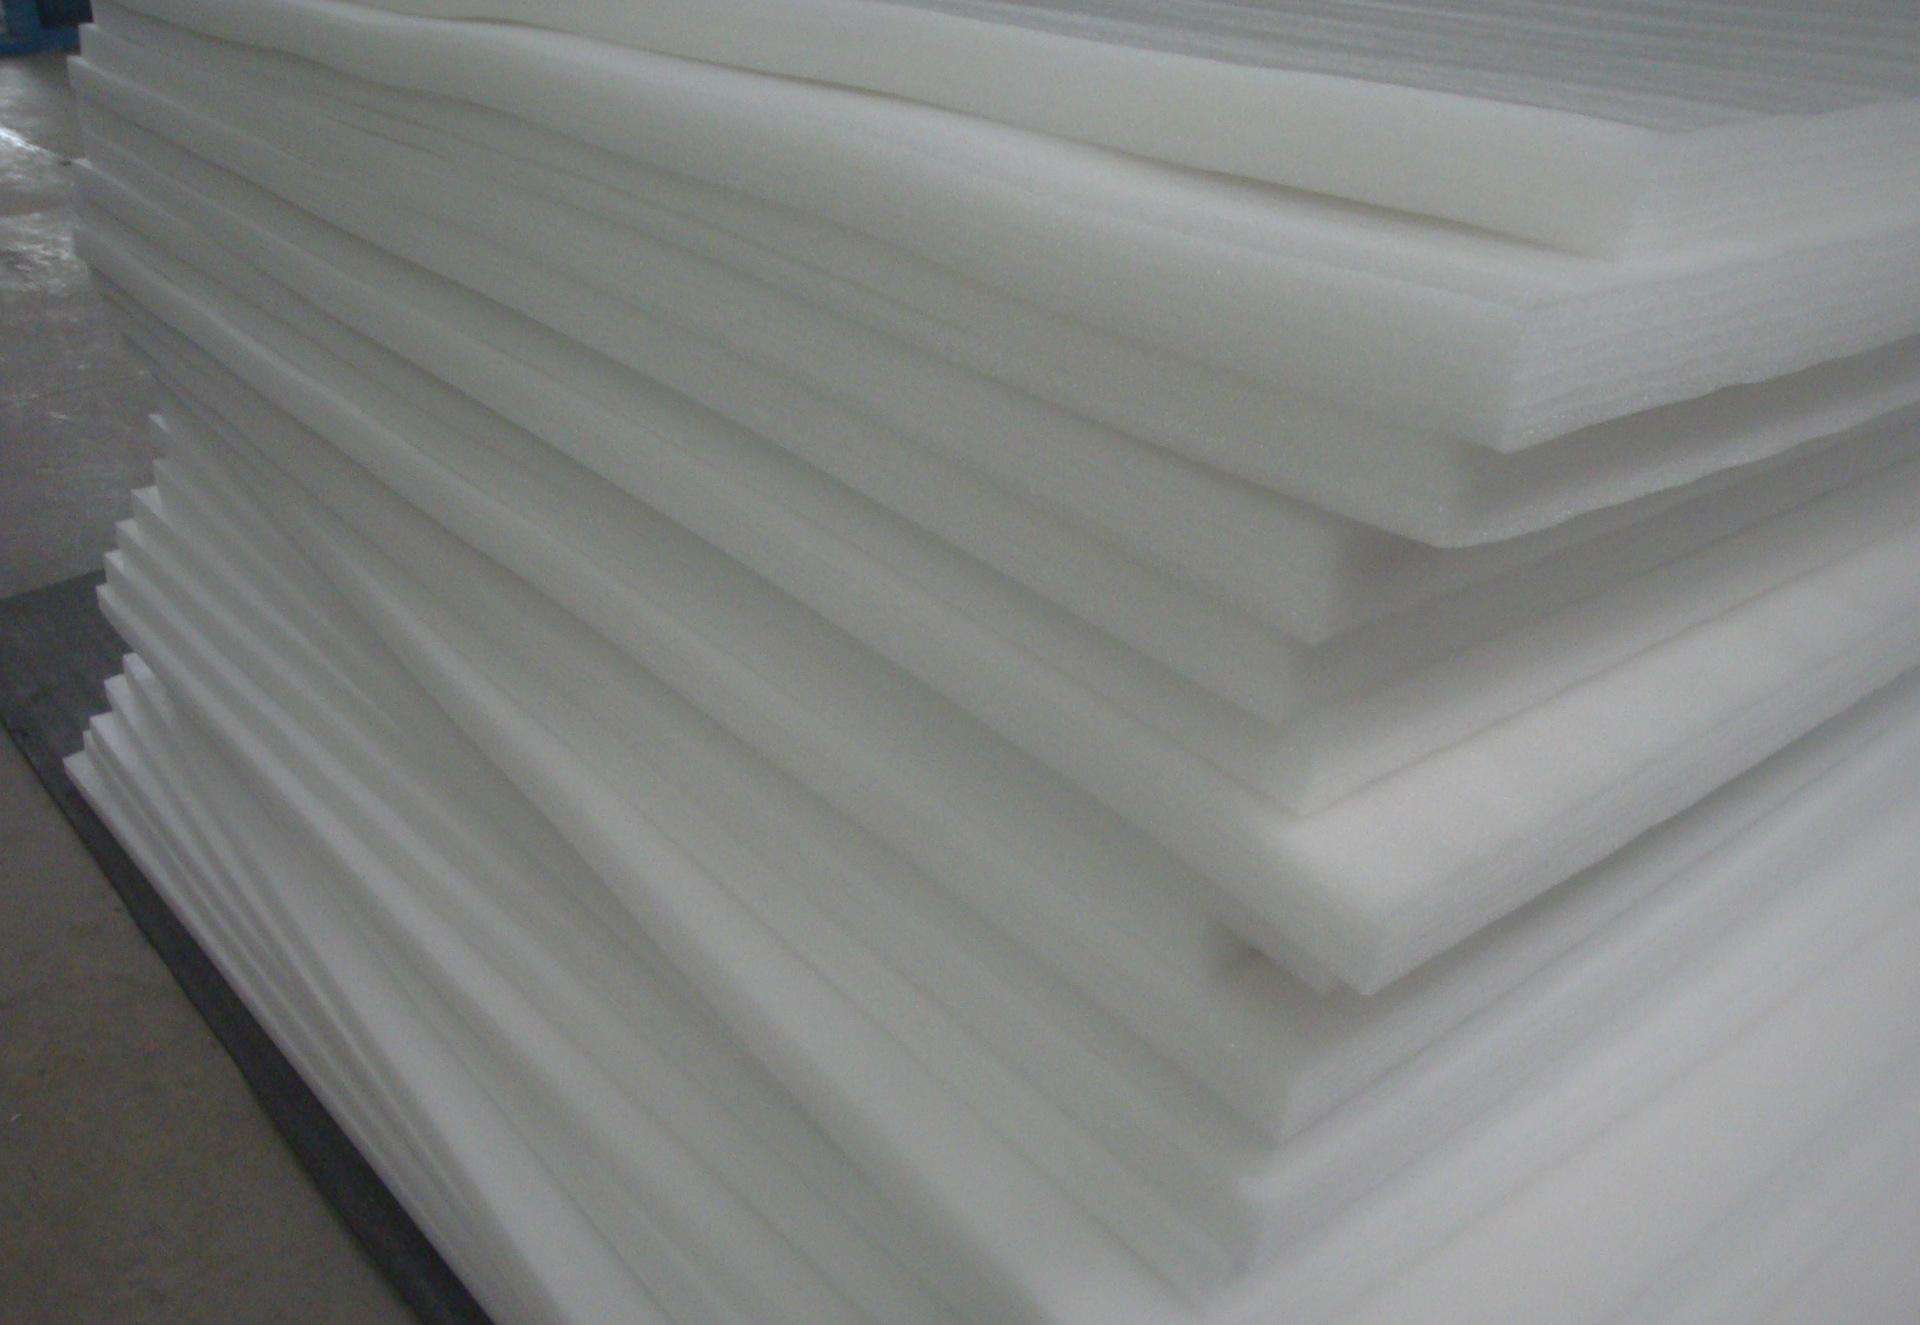 EPE foam sheet 